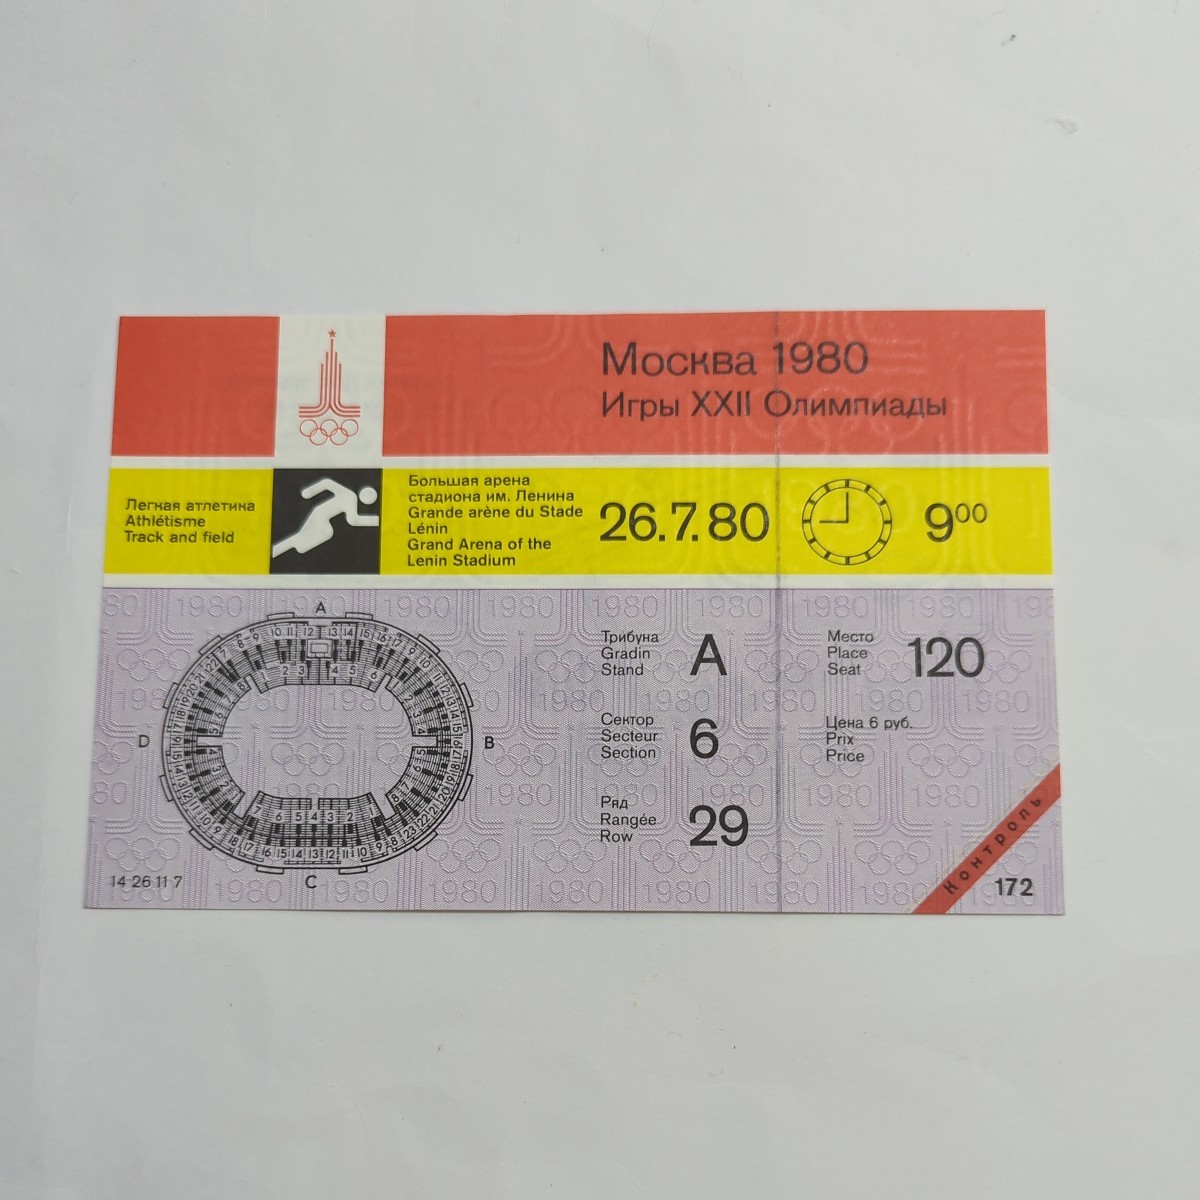 【希少】1980 モスクワ オリンピック 未使用 チケット 陸上 120_画像1